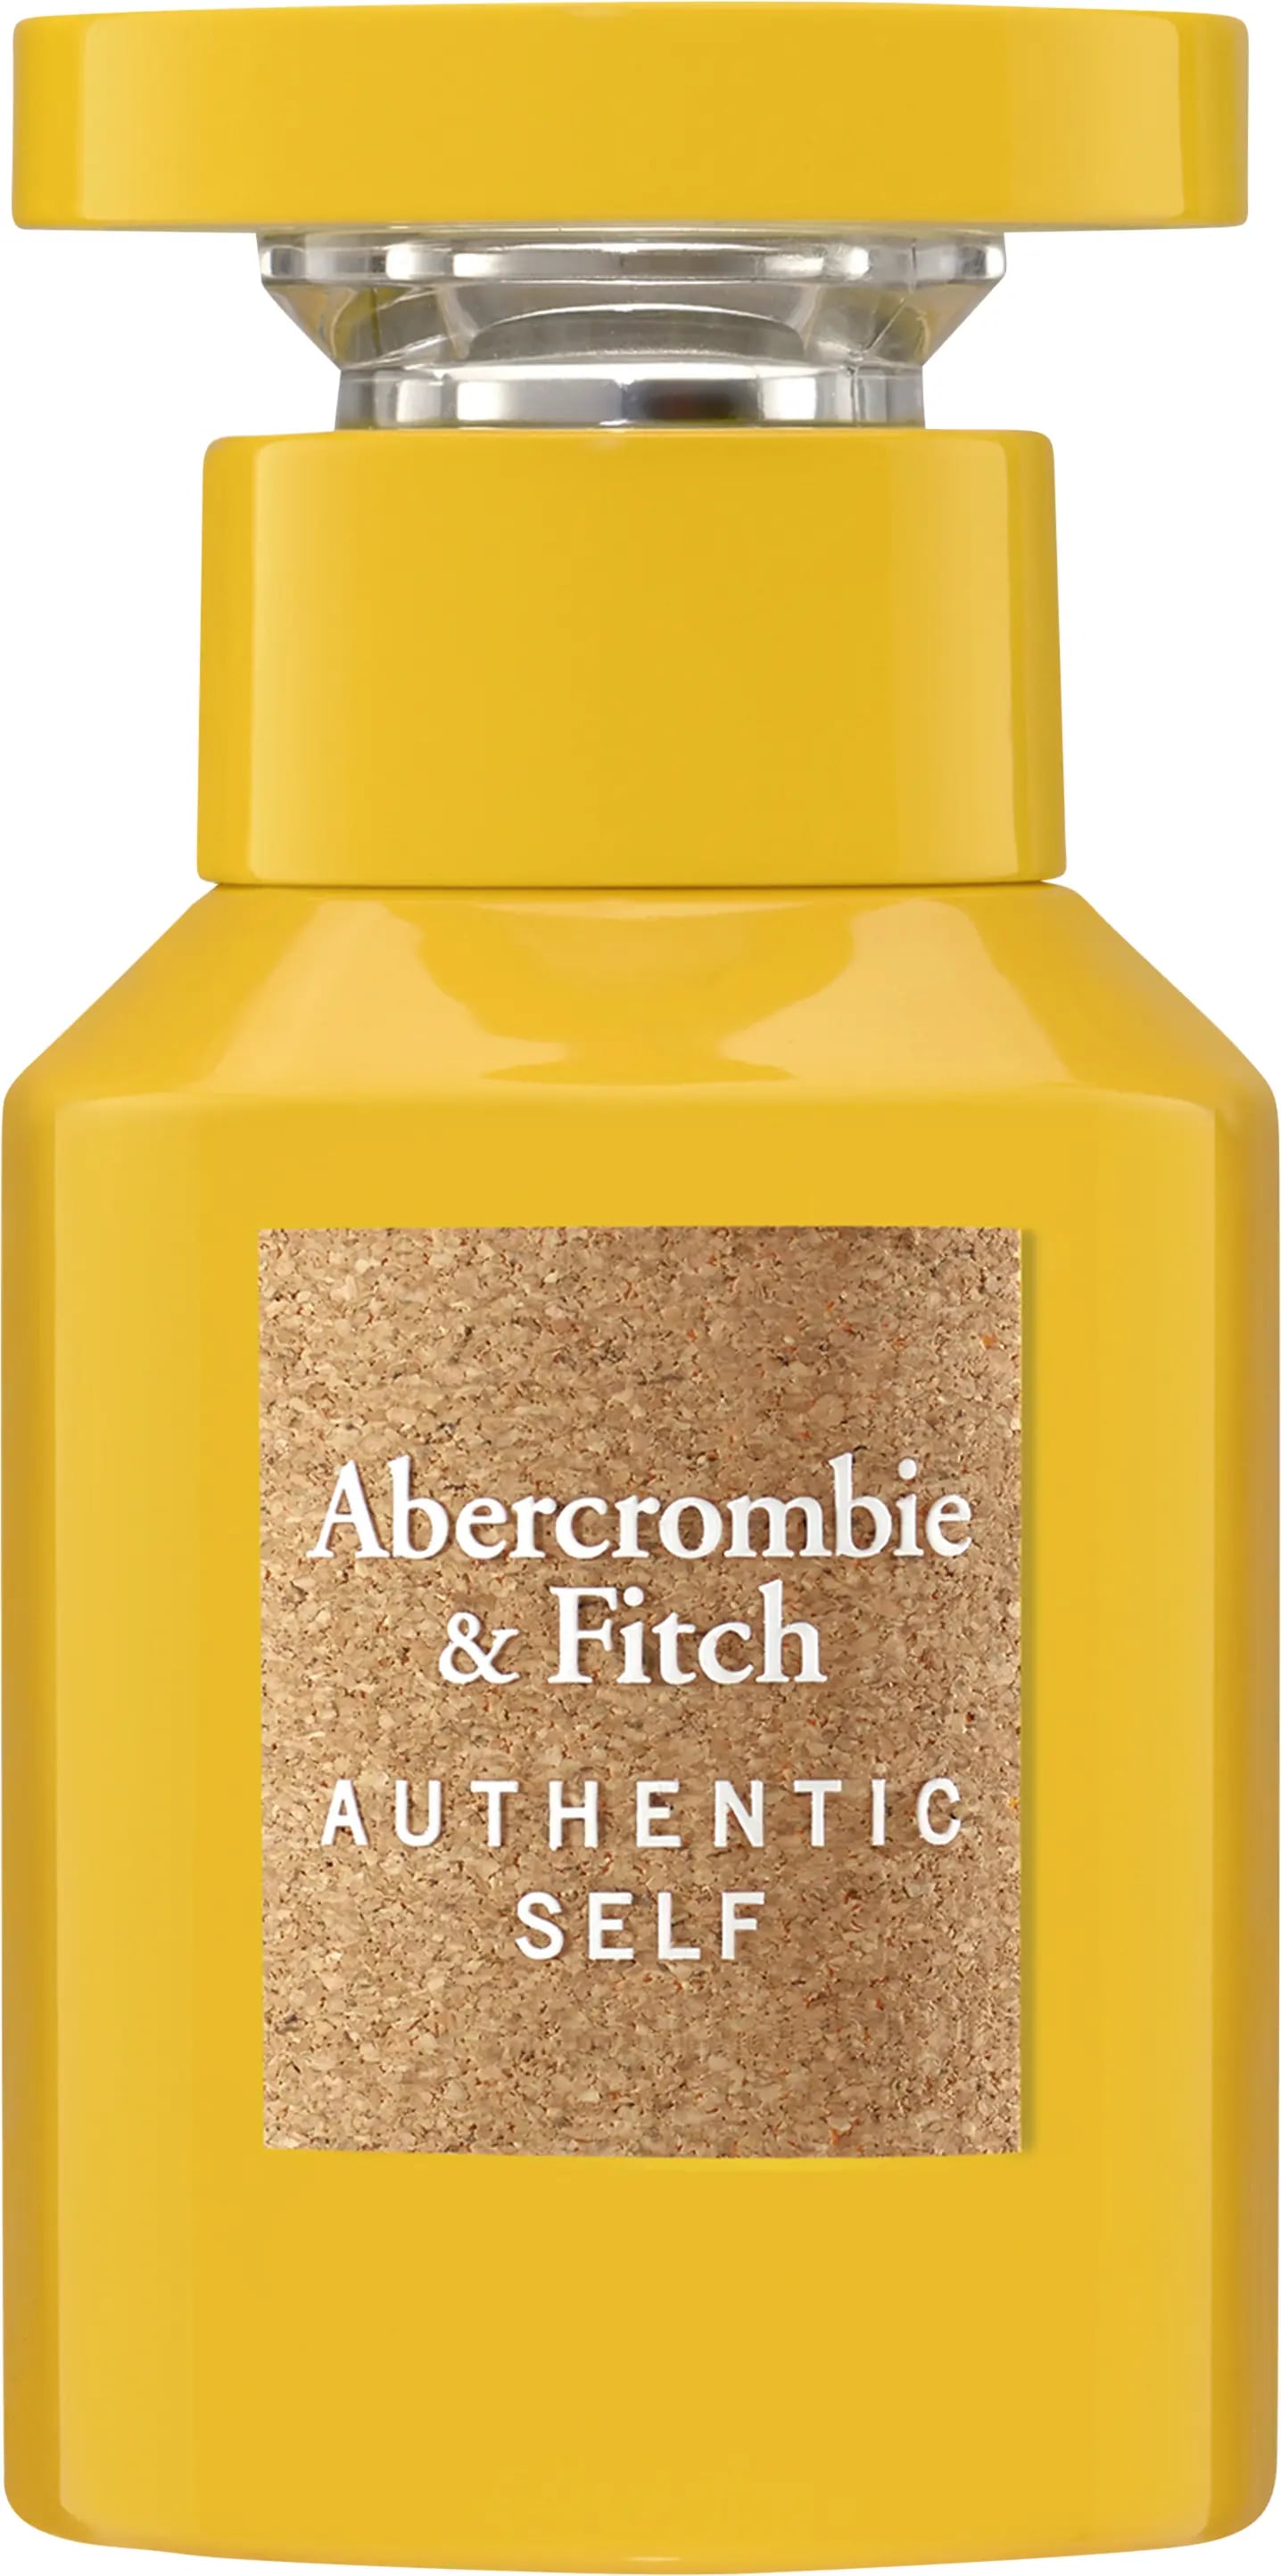 abercrombie & fitch authentic self woman woda perfumowana 100 ml   